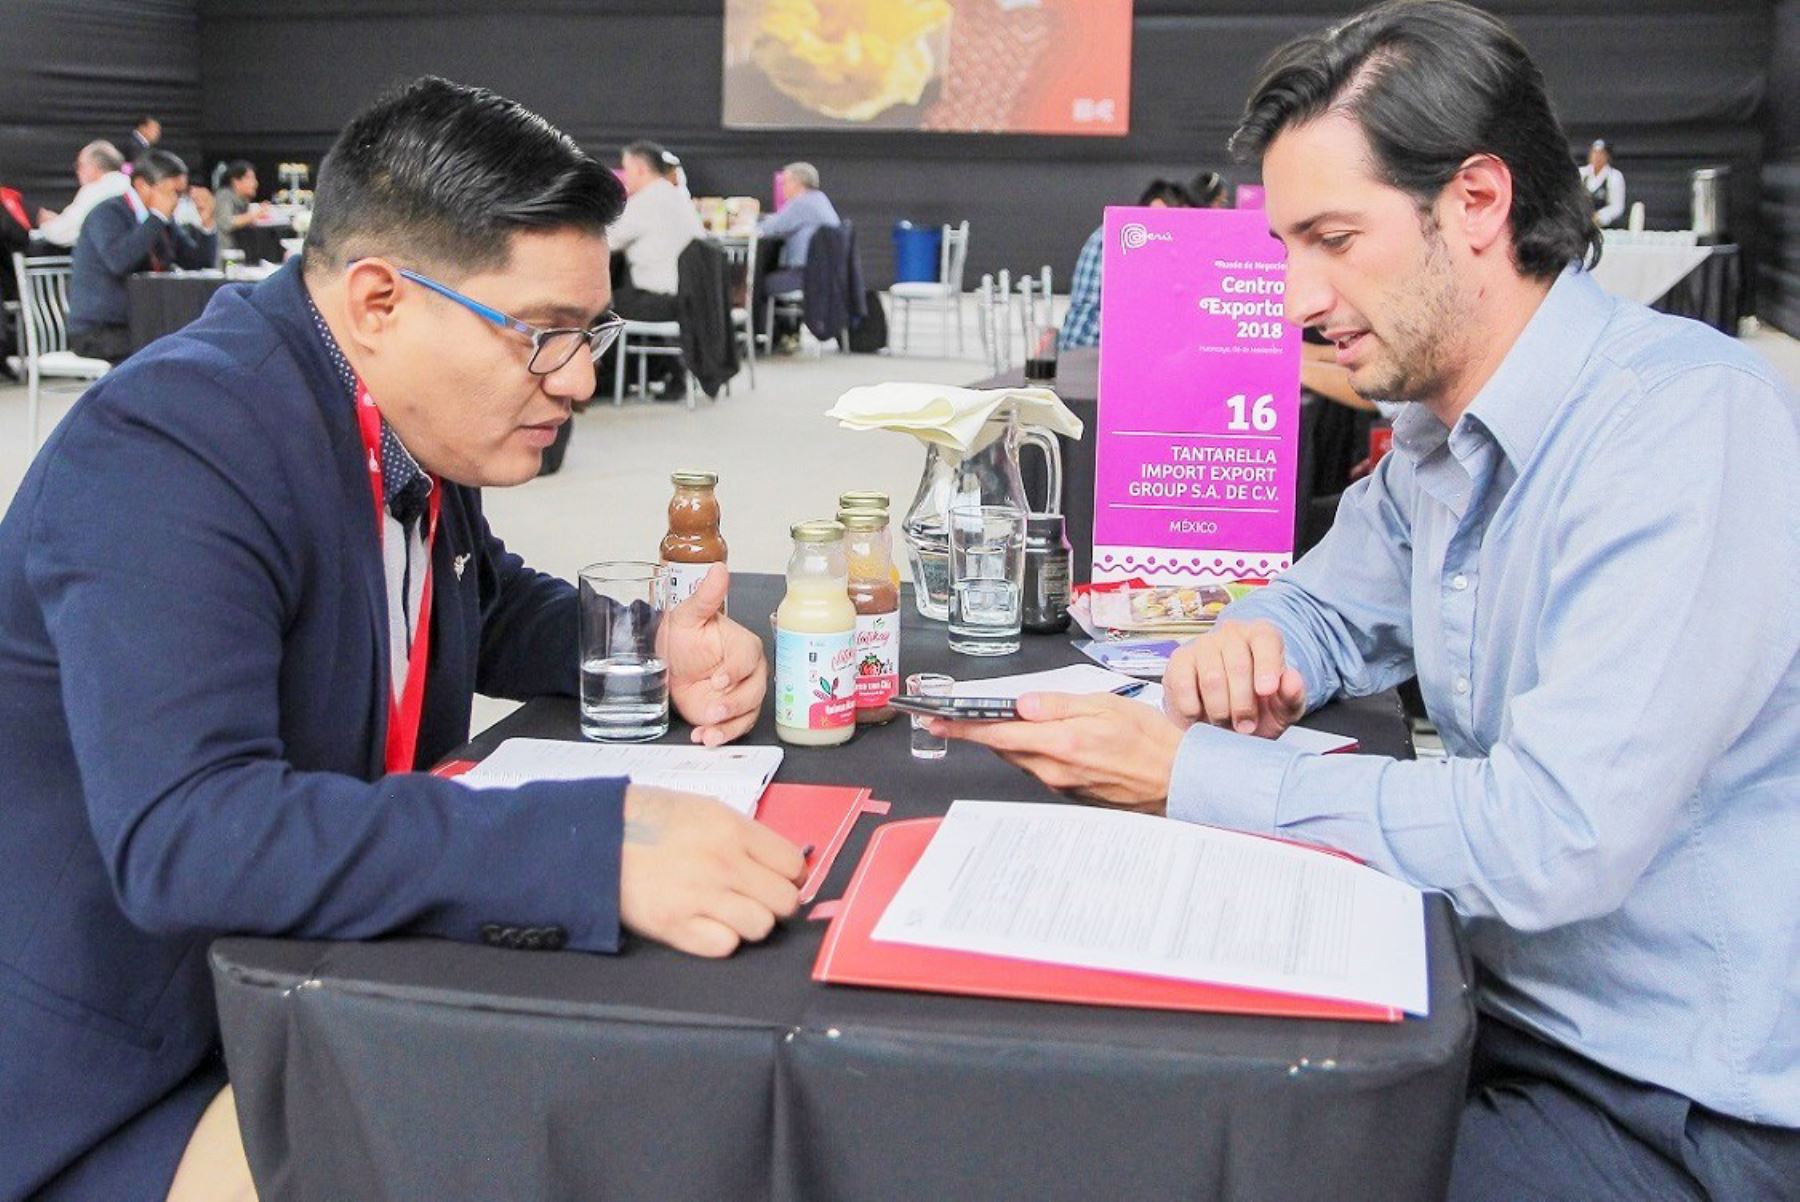 Superalimentos peruanos se ofrecerán en Centro Exporta 2019 con sede en Ayacucho